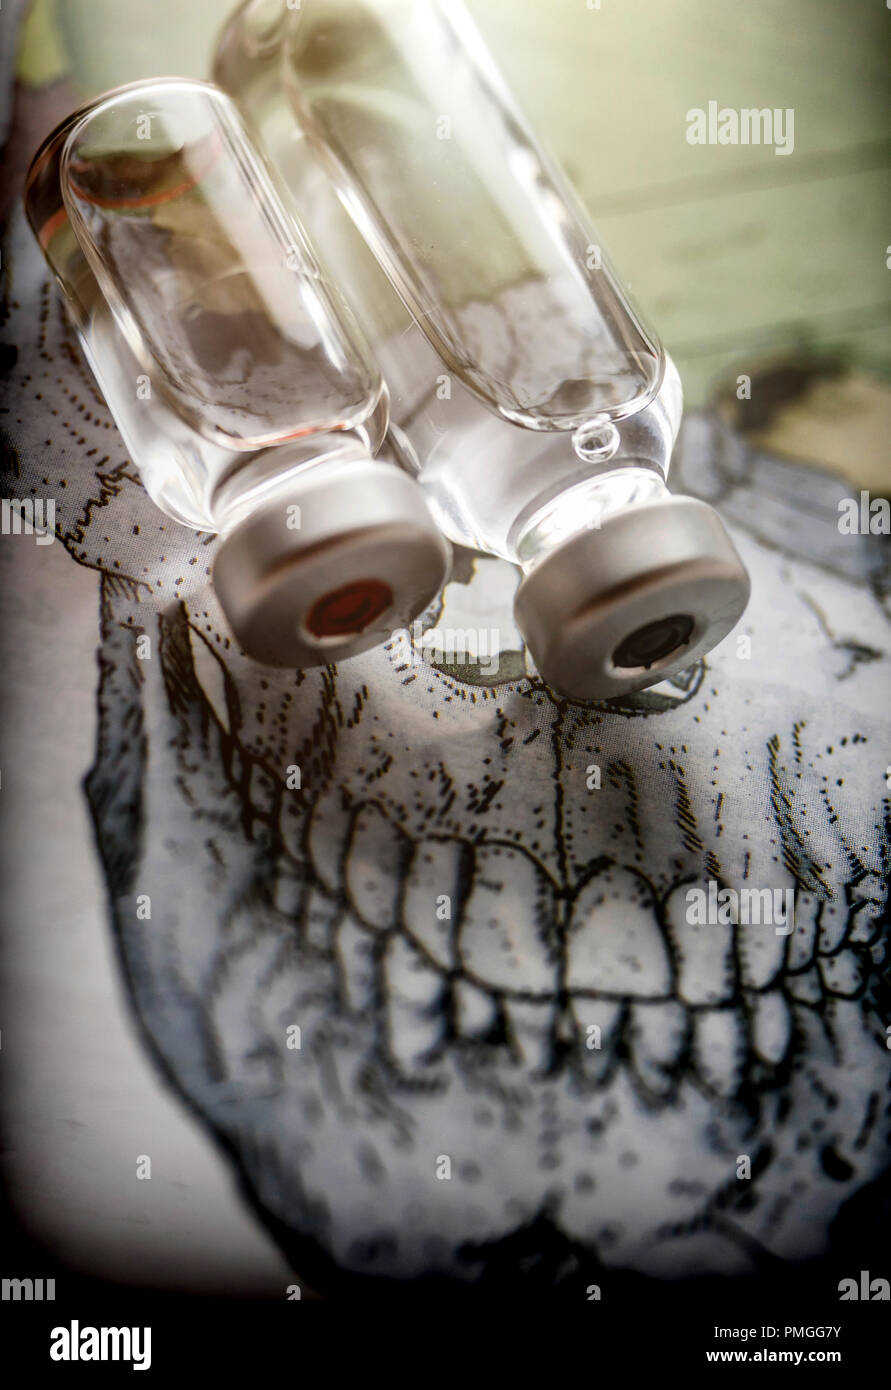 Durchstechflaschen auf einen Schädel, konzeptionelle Bild Stockfoto